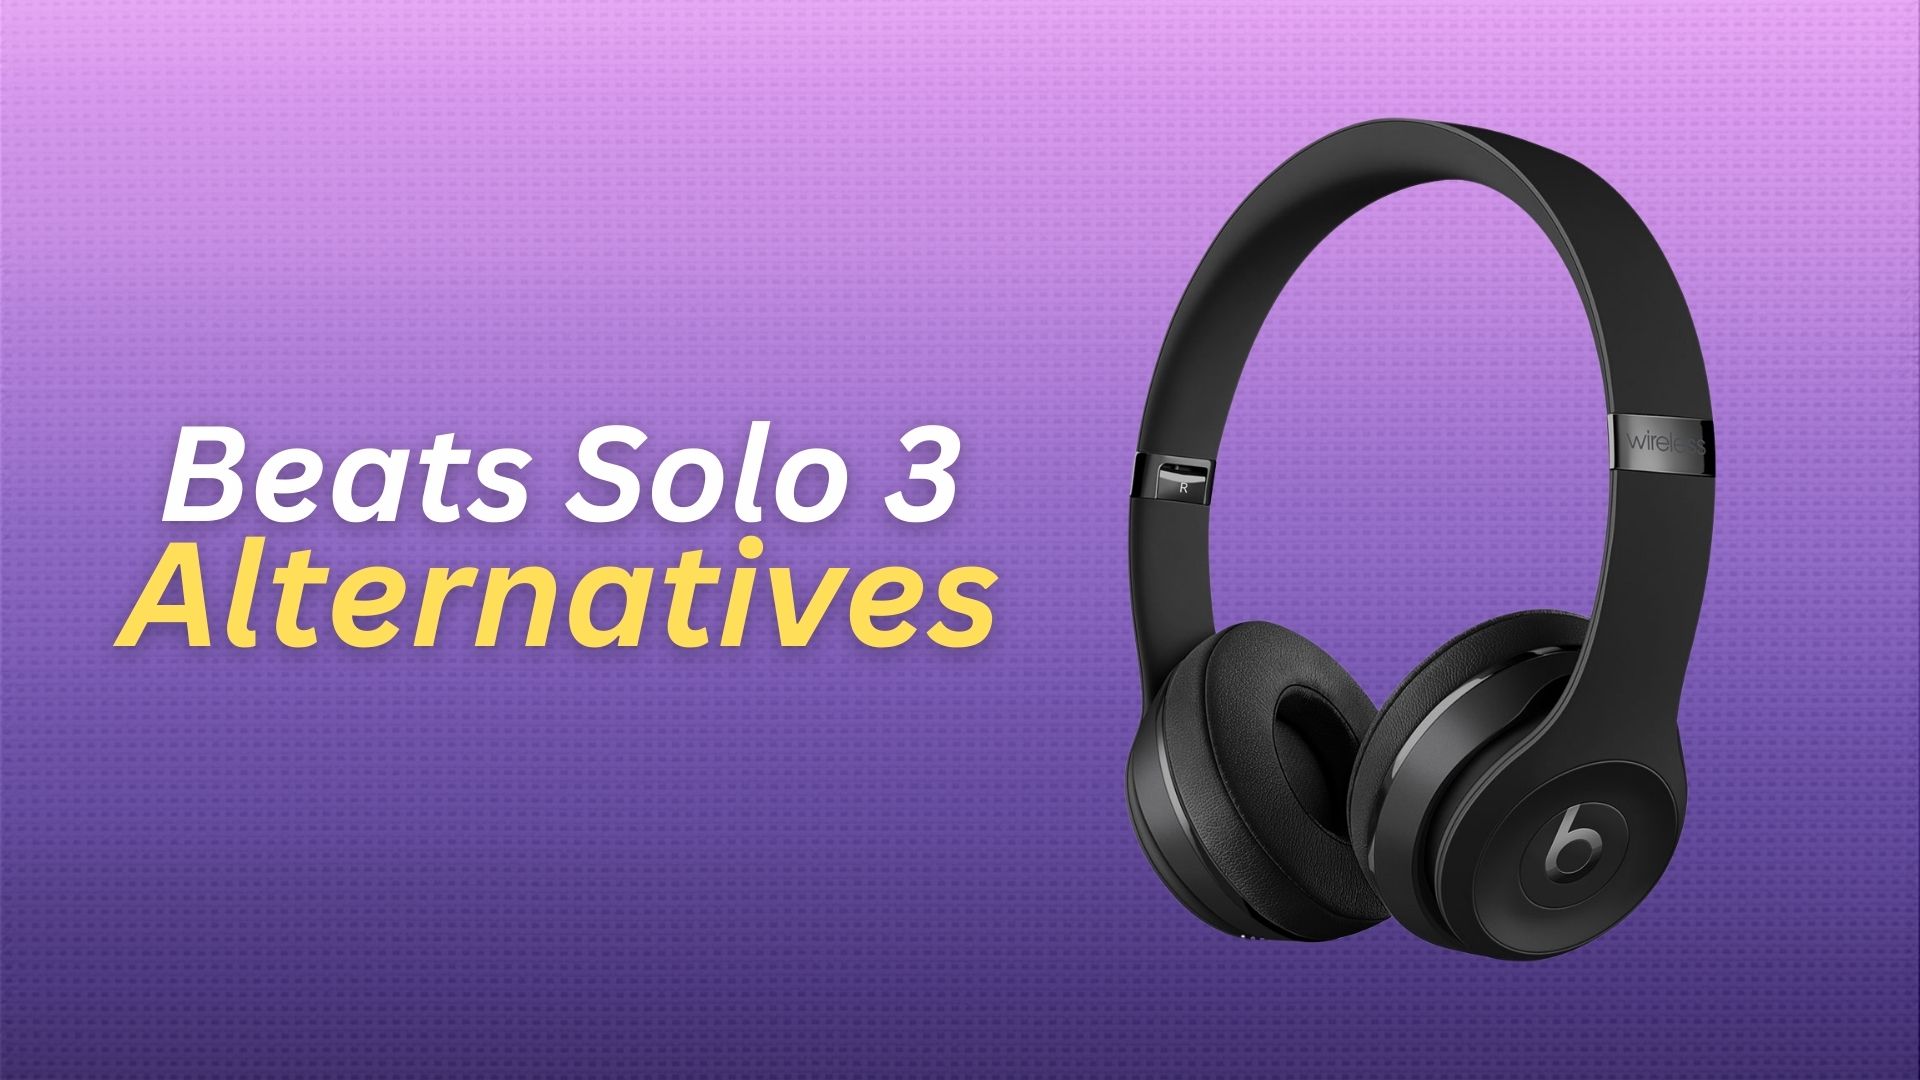 Beats Solo 3 Alternatives